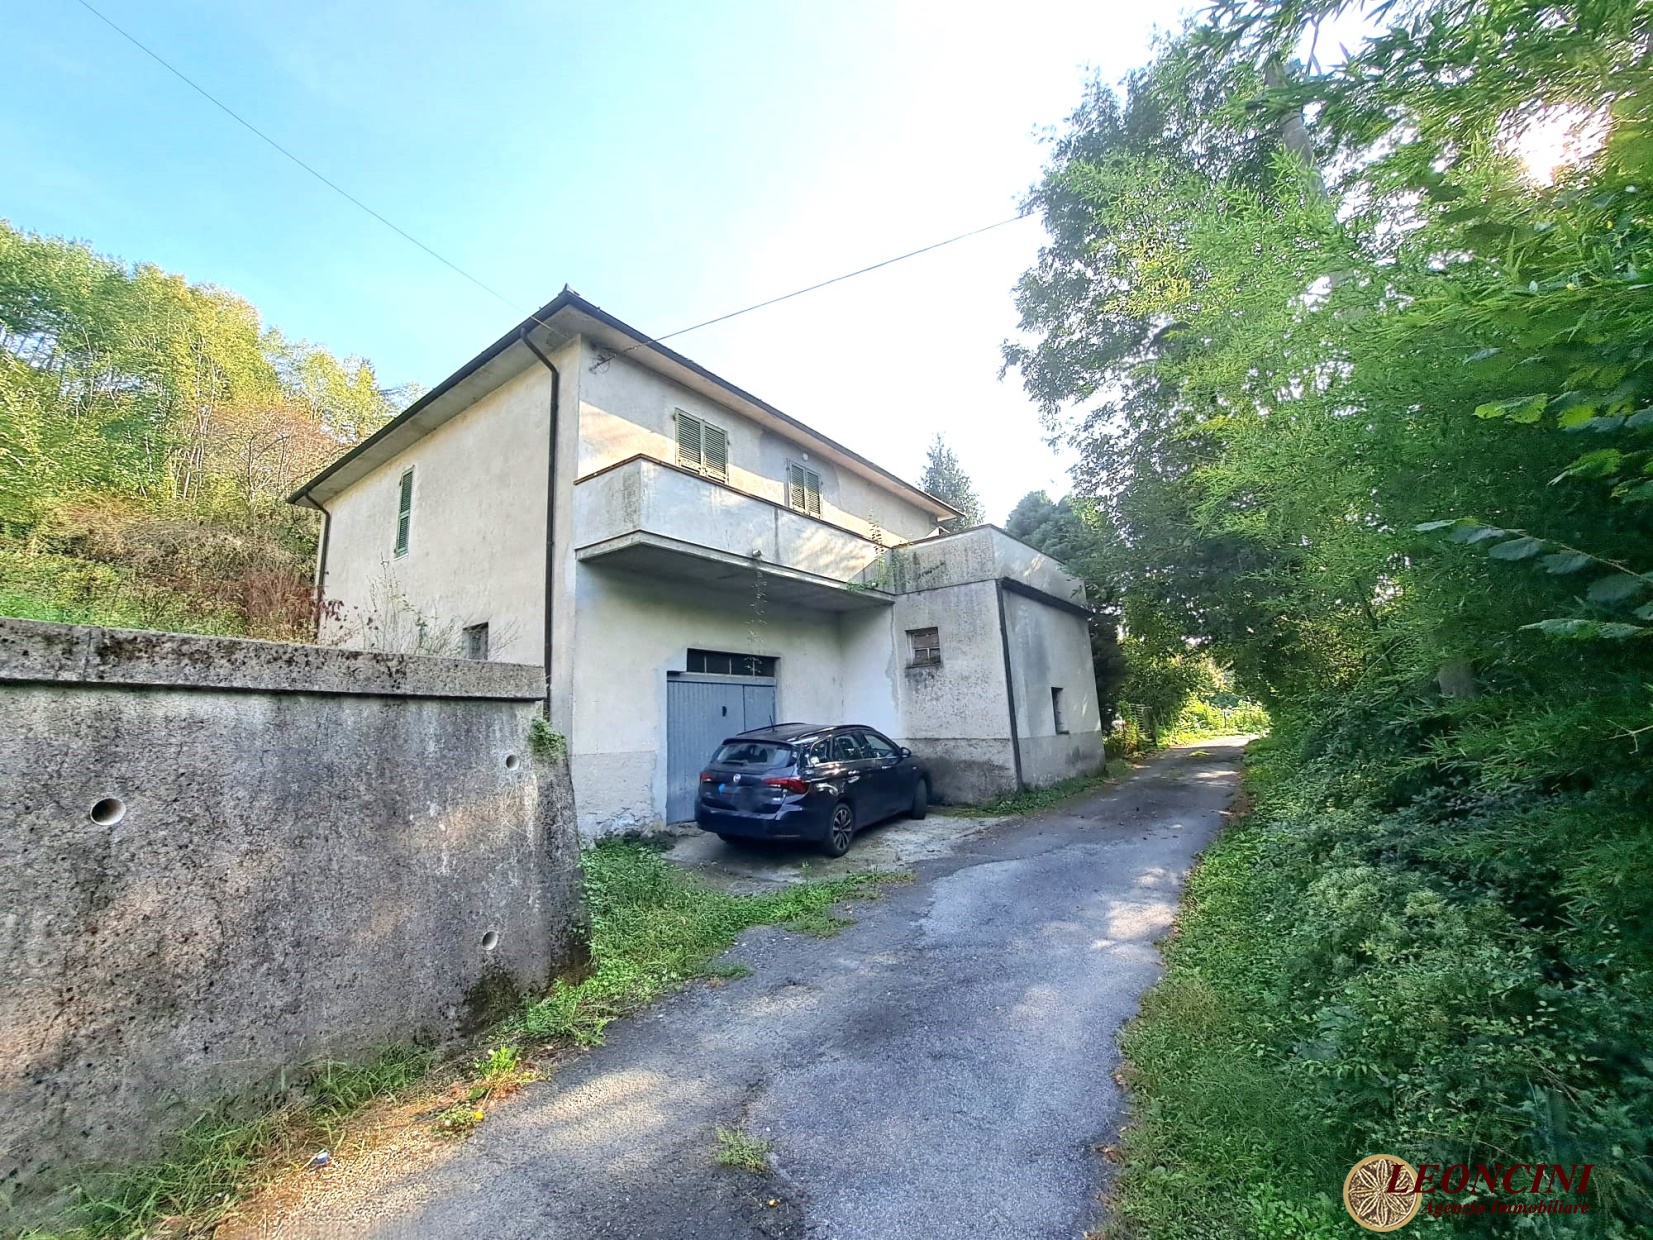 Villa in vendita a Villafranca in Lunigiana, 5 locali, prezzo € 115.000 | PortaleAgenzieImmobiliari.it